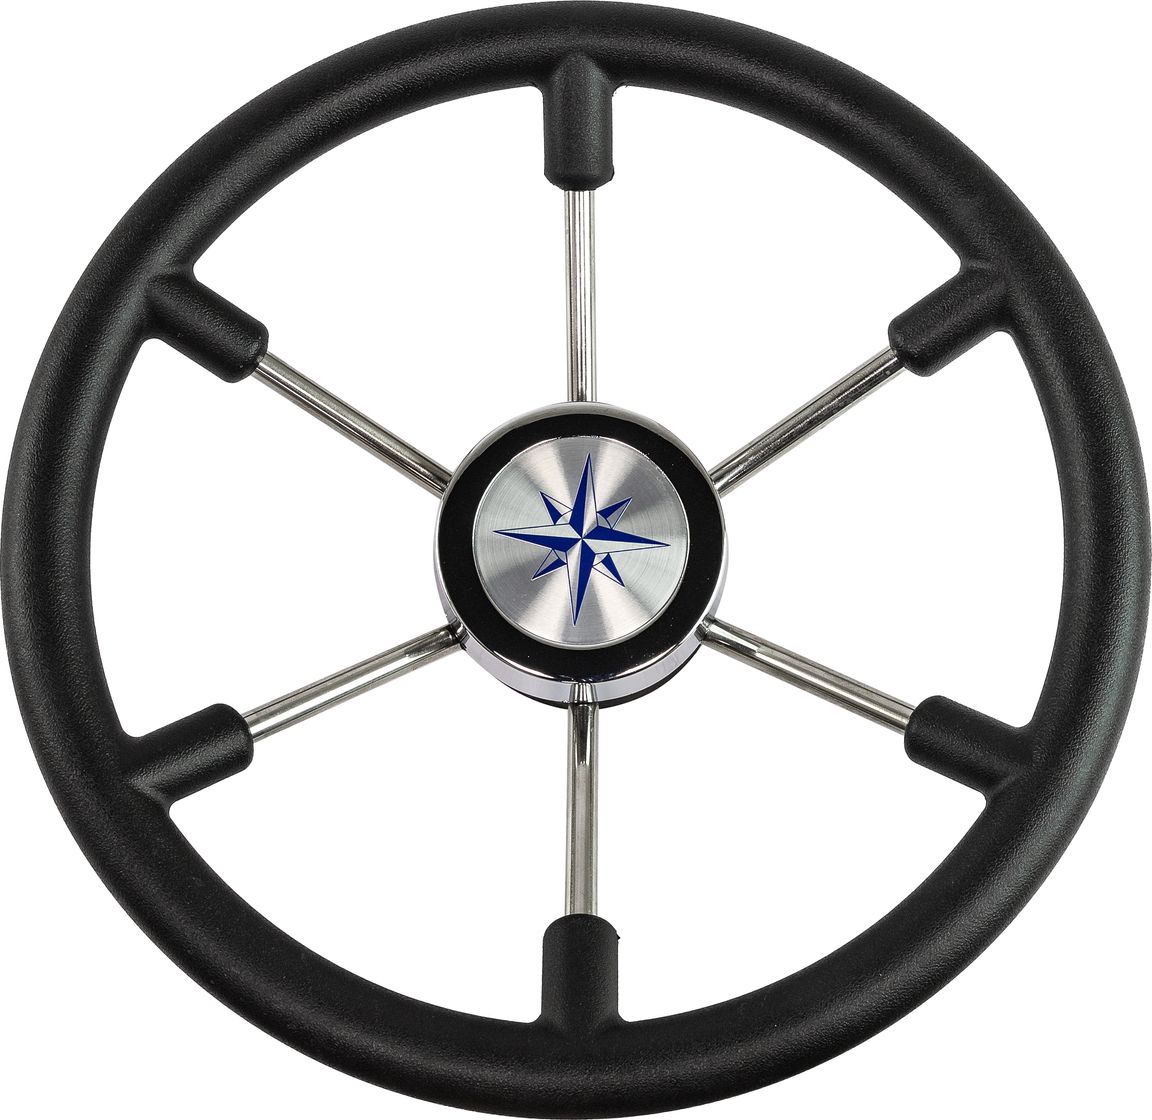 Рулевое колесо LEADER PLAST черный обод серебряные спицы д. 360 мм VN8360-01 рулевое колесо orion обод черносеребристый спицы серебряные д 355 мм vn960101 93